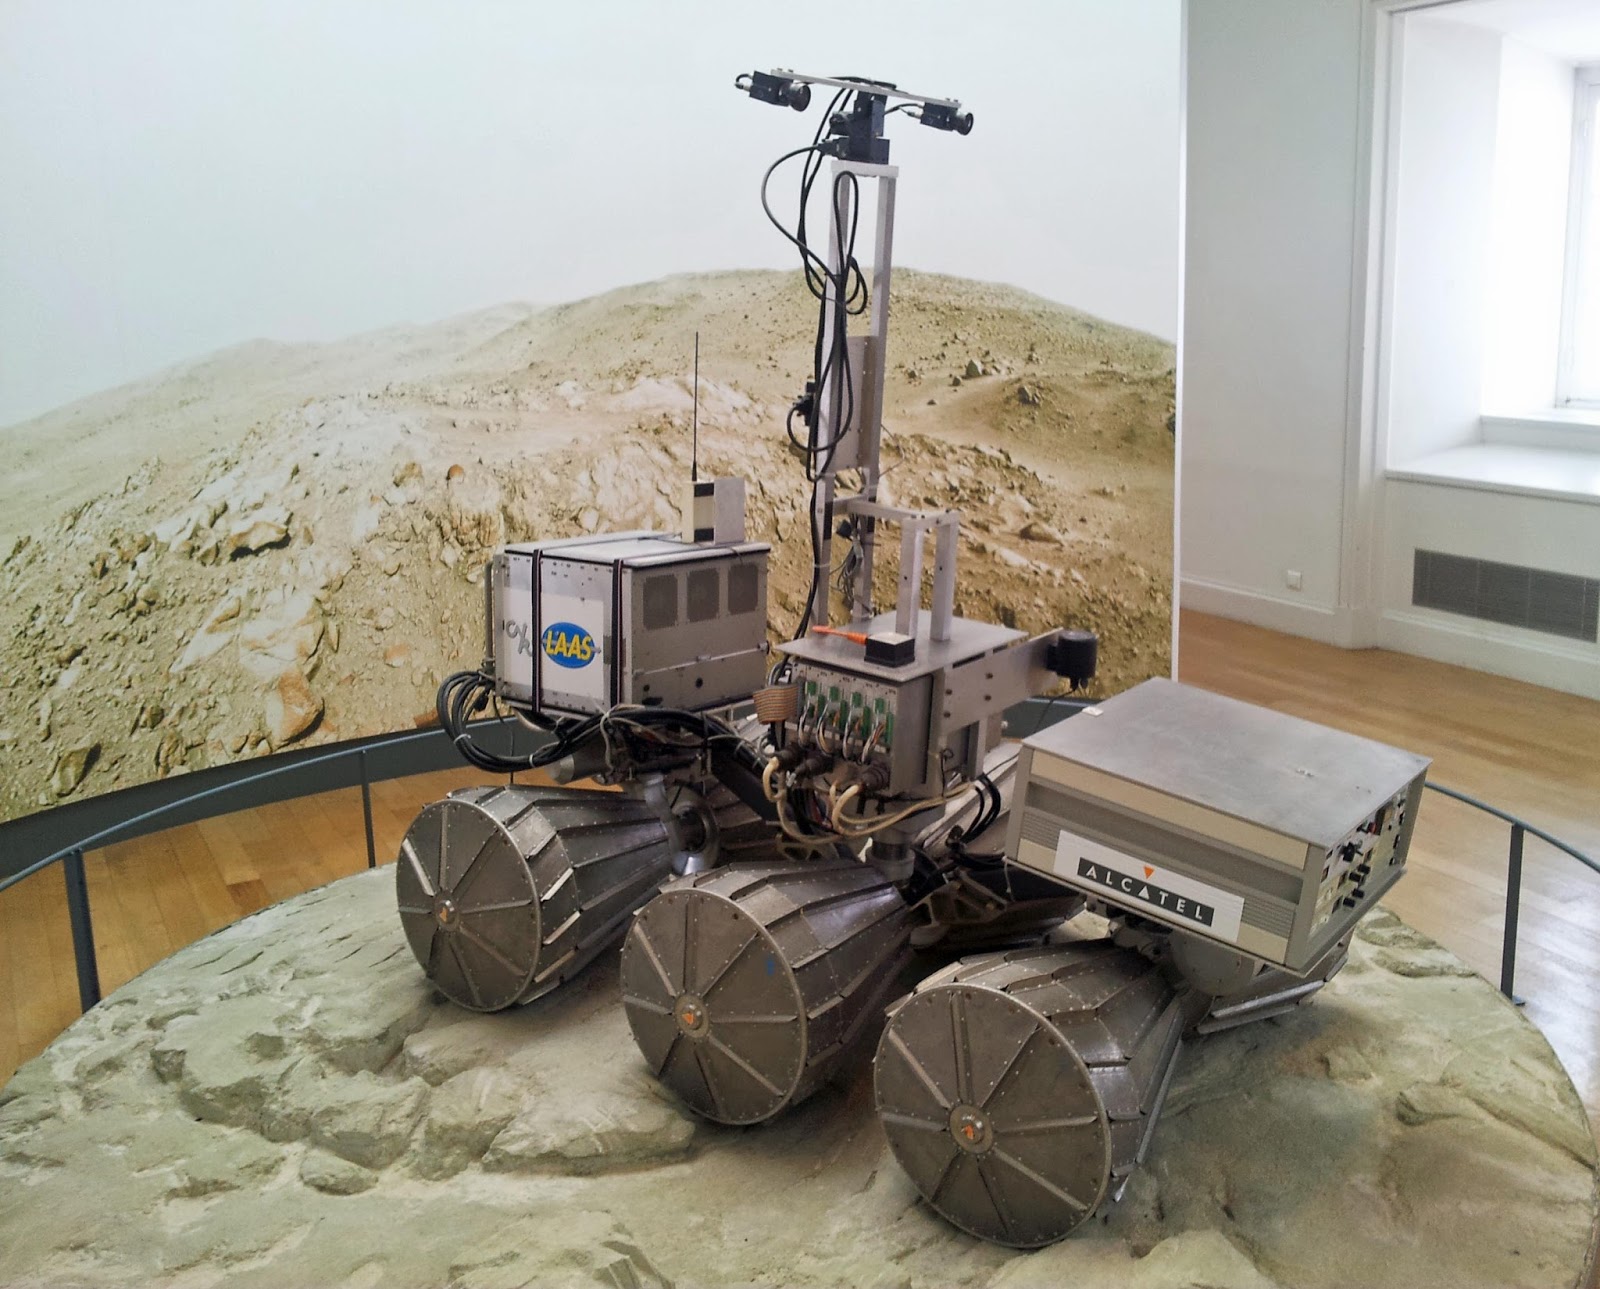 SPACE RELICS: Le Robot rover planétaire LAMA du Musée des Arts et